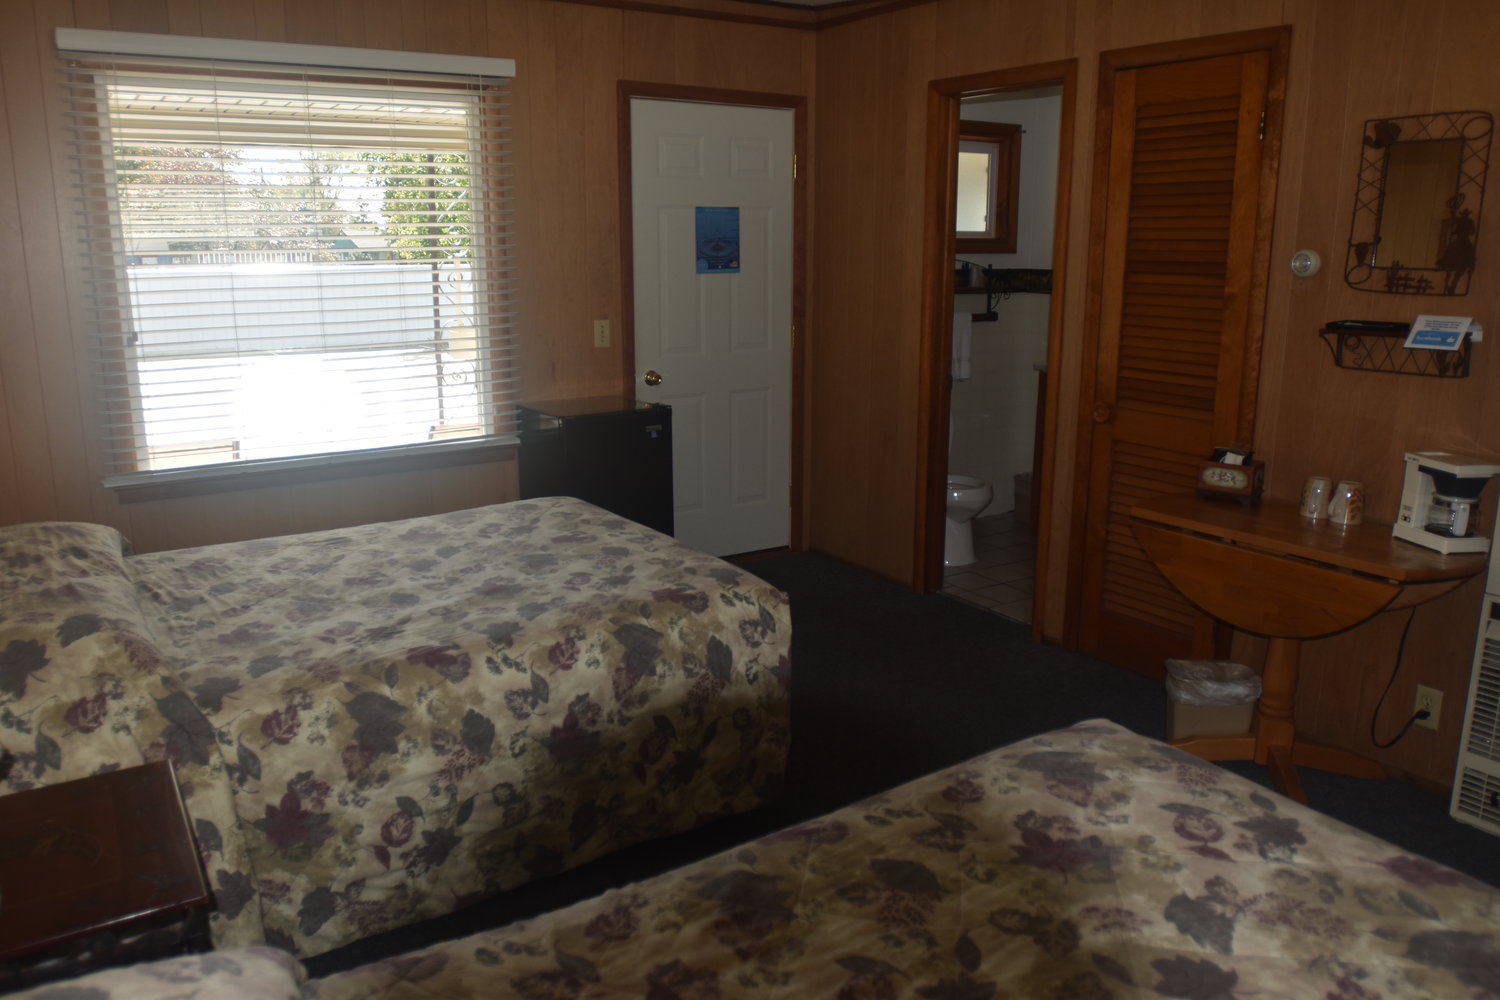 Blue Spruce Motel - Port Austin - Room Number 2 - Interior Full Beds.jpeg